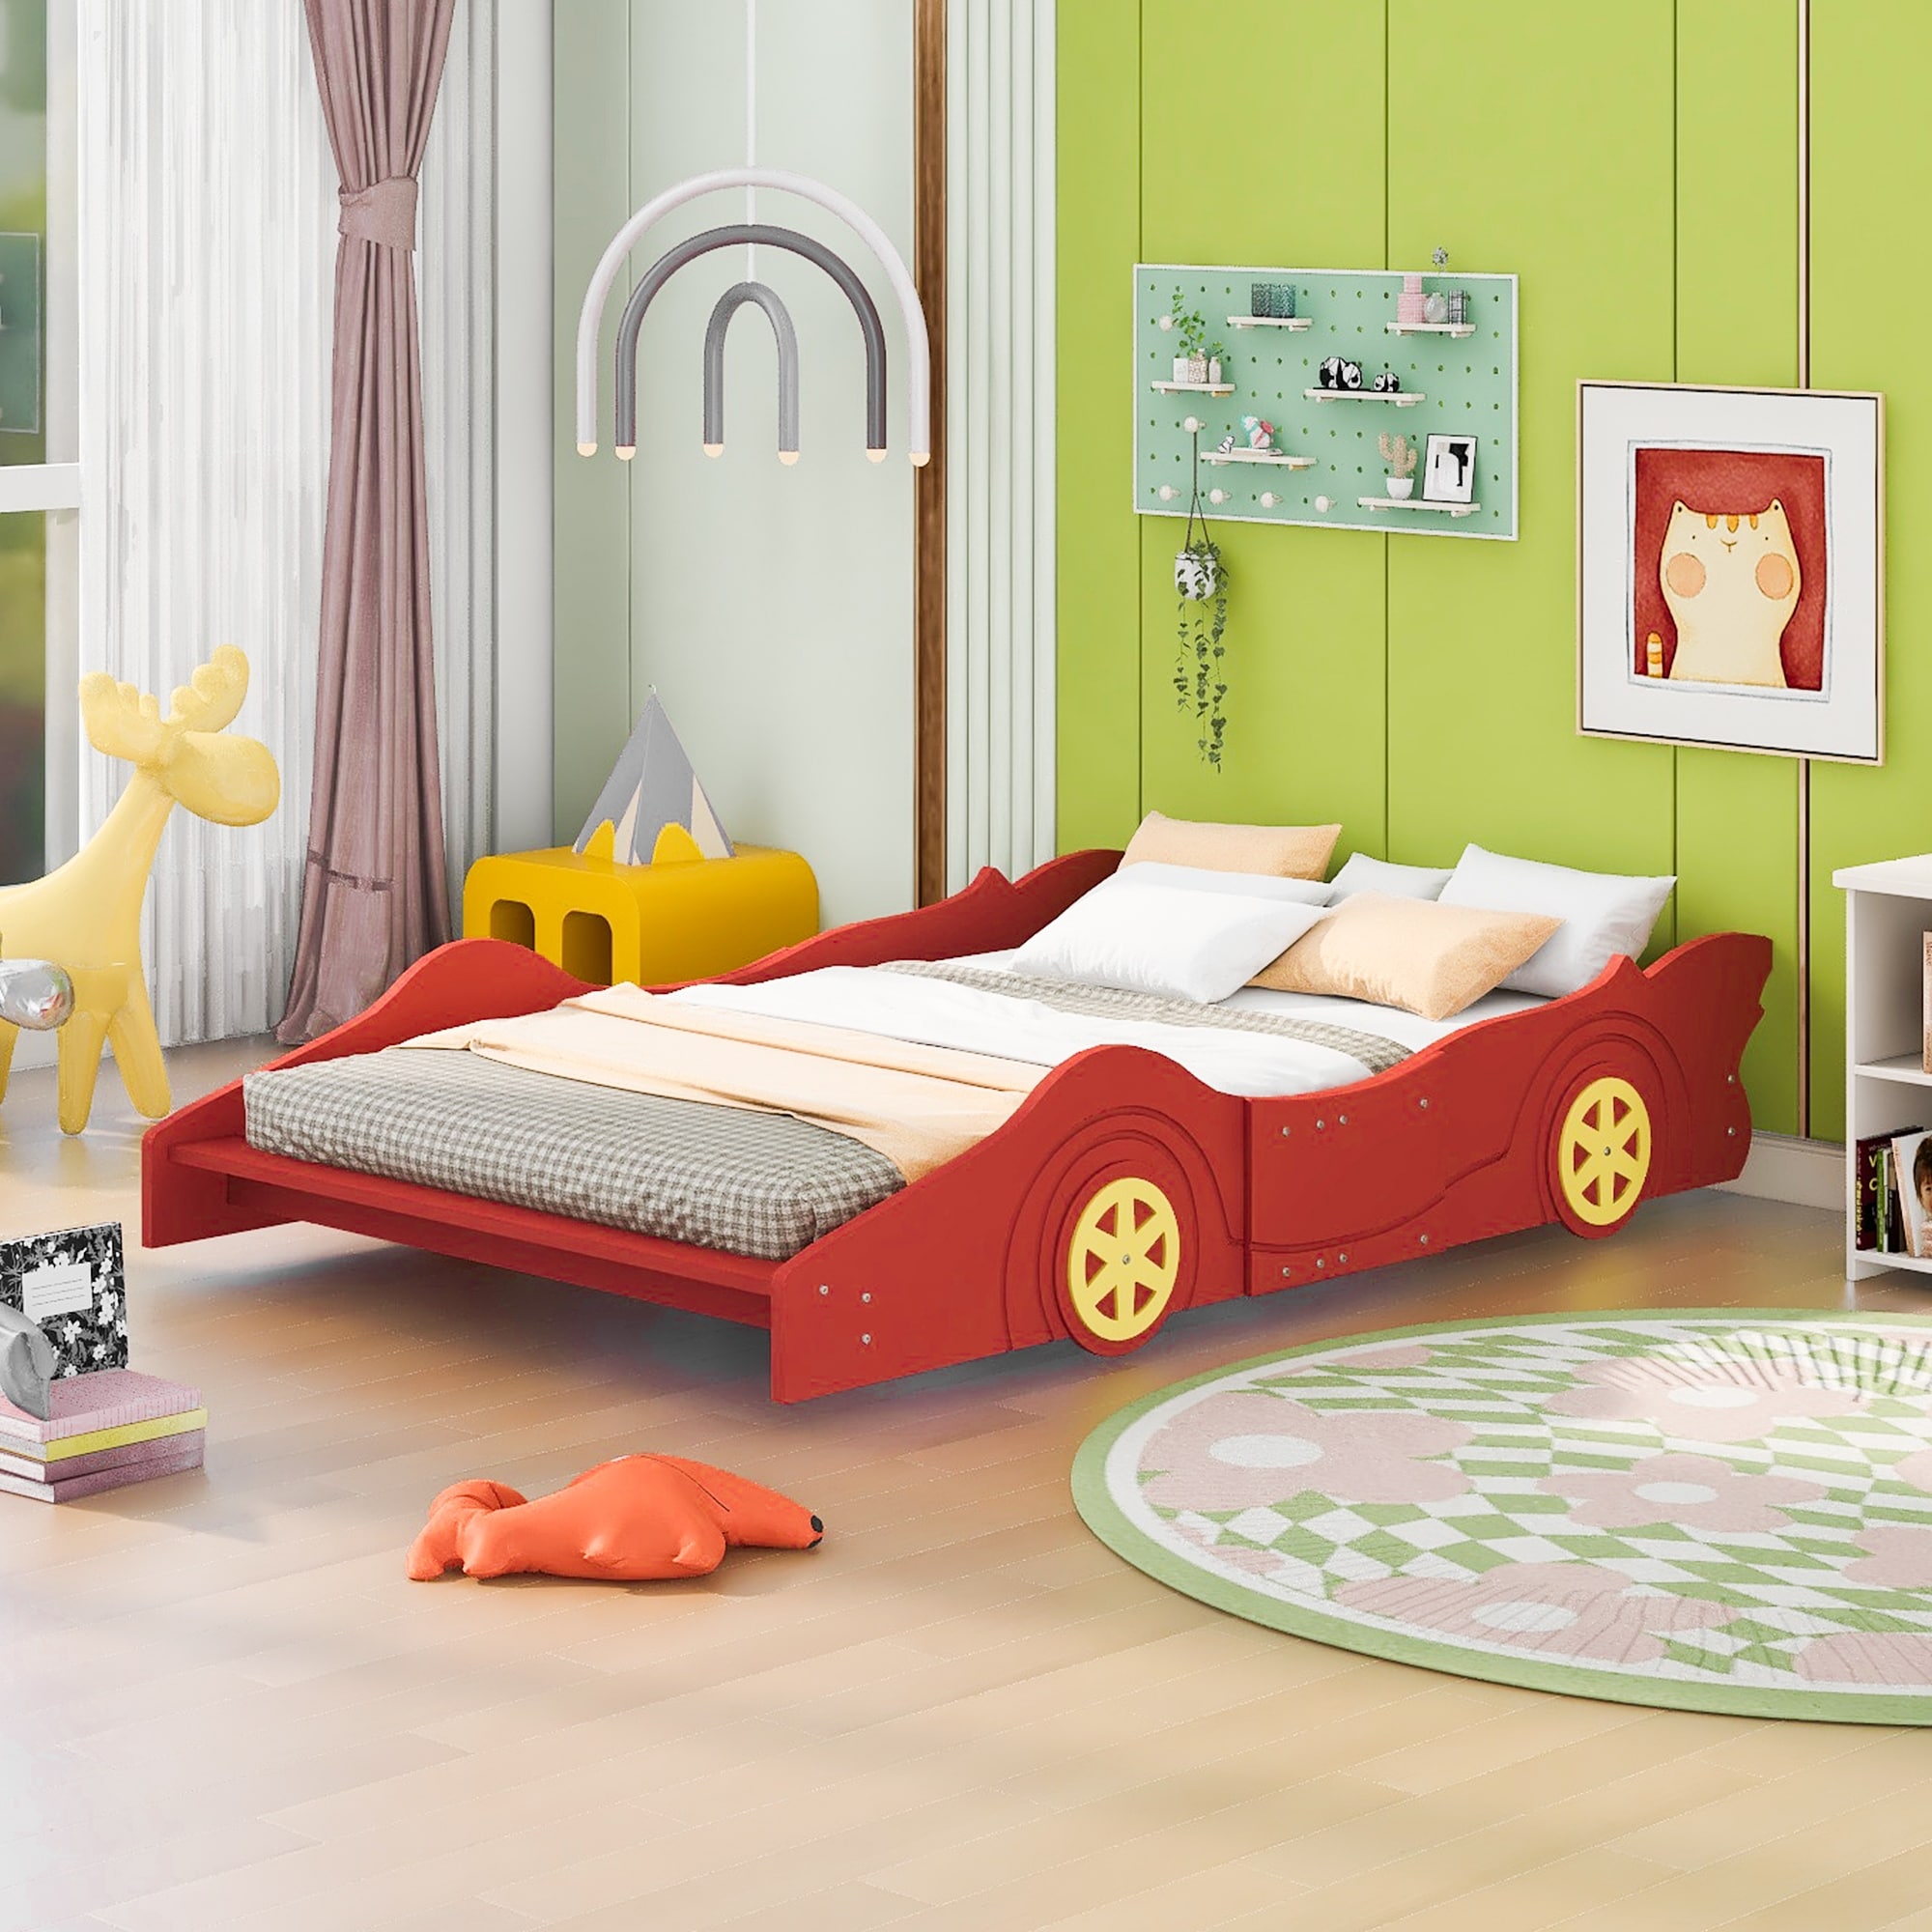 drinken Vaak gesproken Inwoner Full Size Wooden Racecar Toddler Bed Platform Bed with Wheels - On Sale - -  37343697